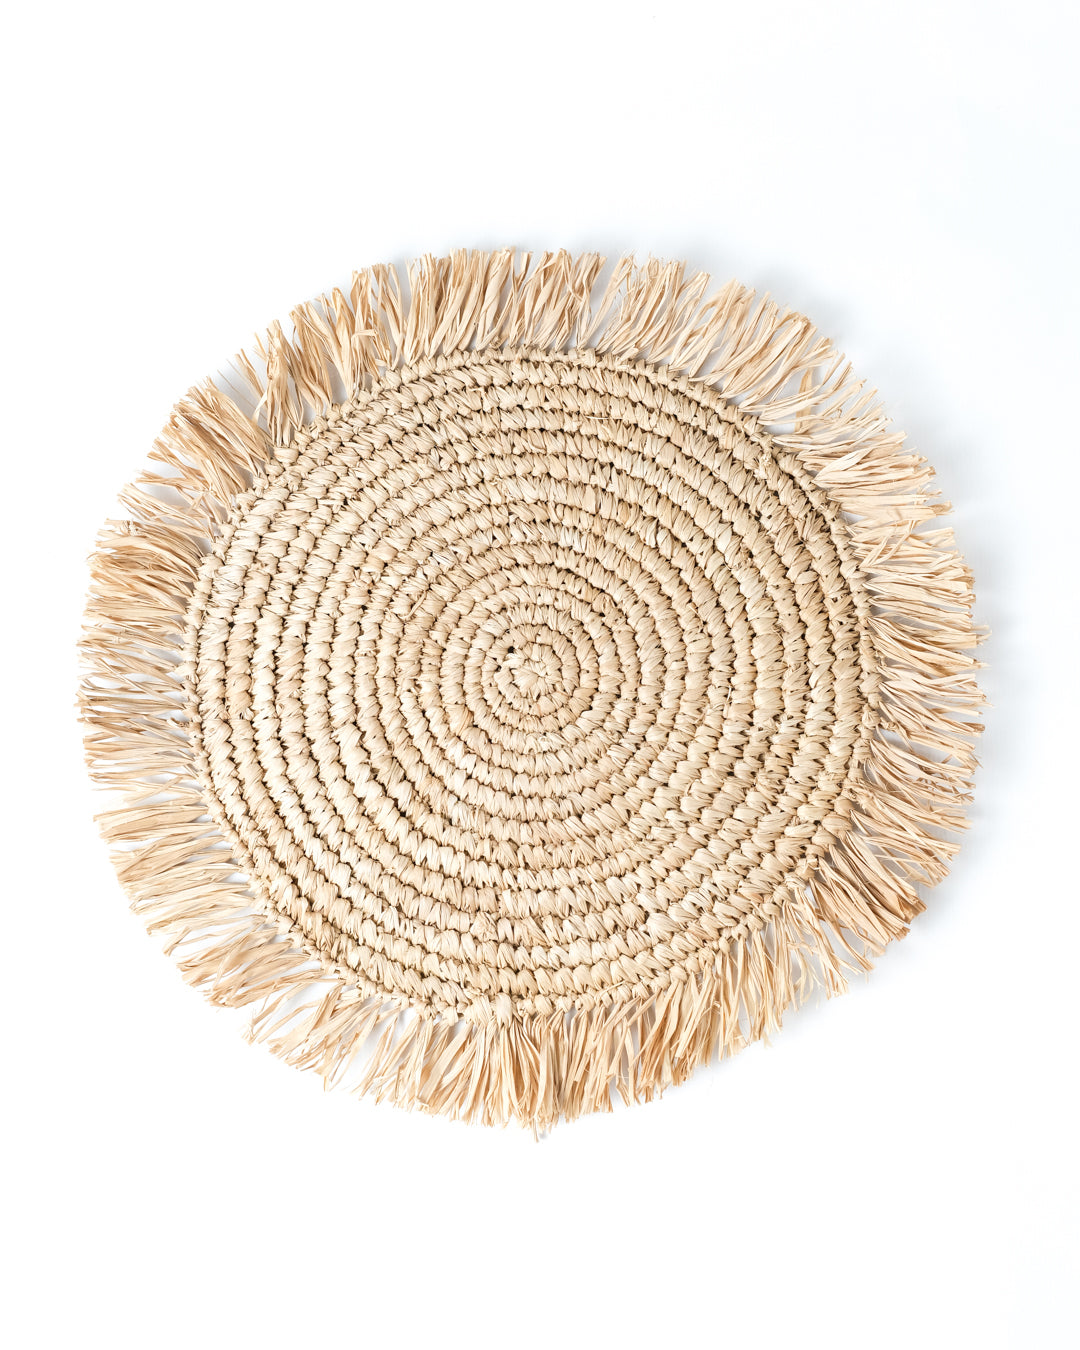 Mantel individual de rafia  100% de fibras naturales redondo buru decorativo, tejido a mano con acabado natural, 40 cm de diámetro, hecho en Indonesia